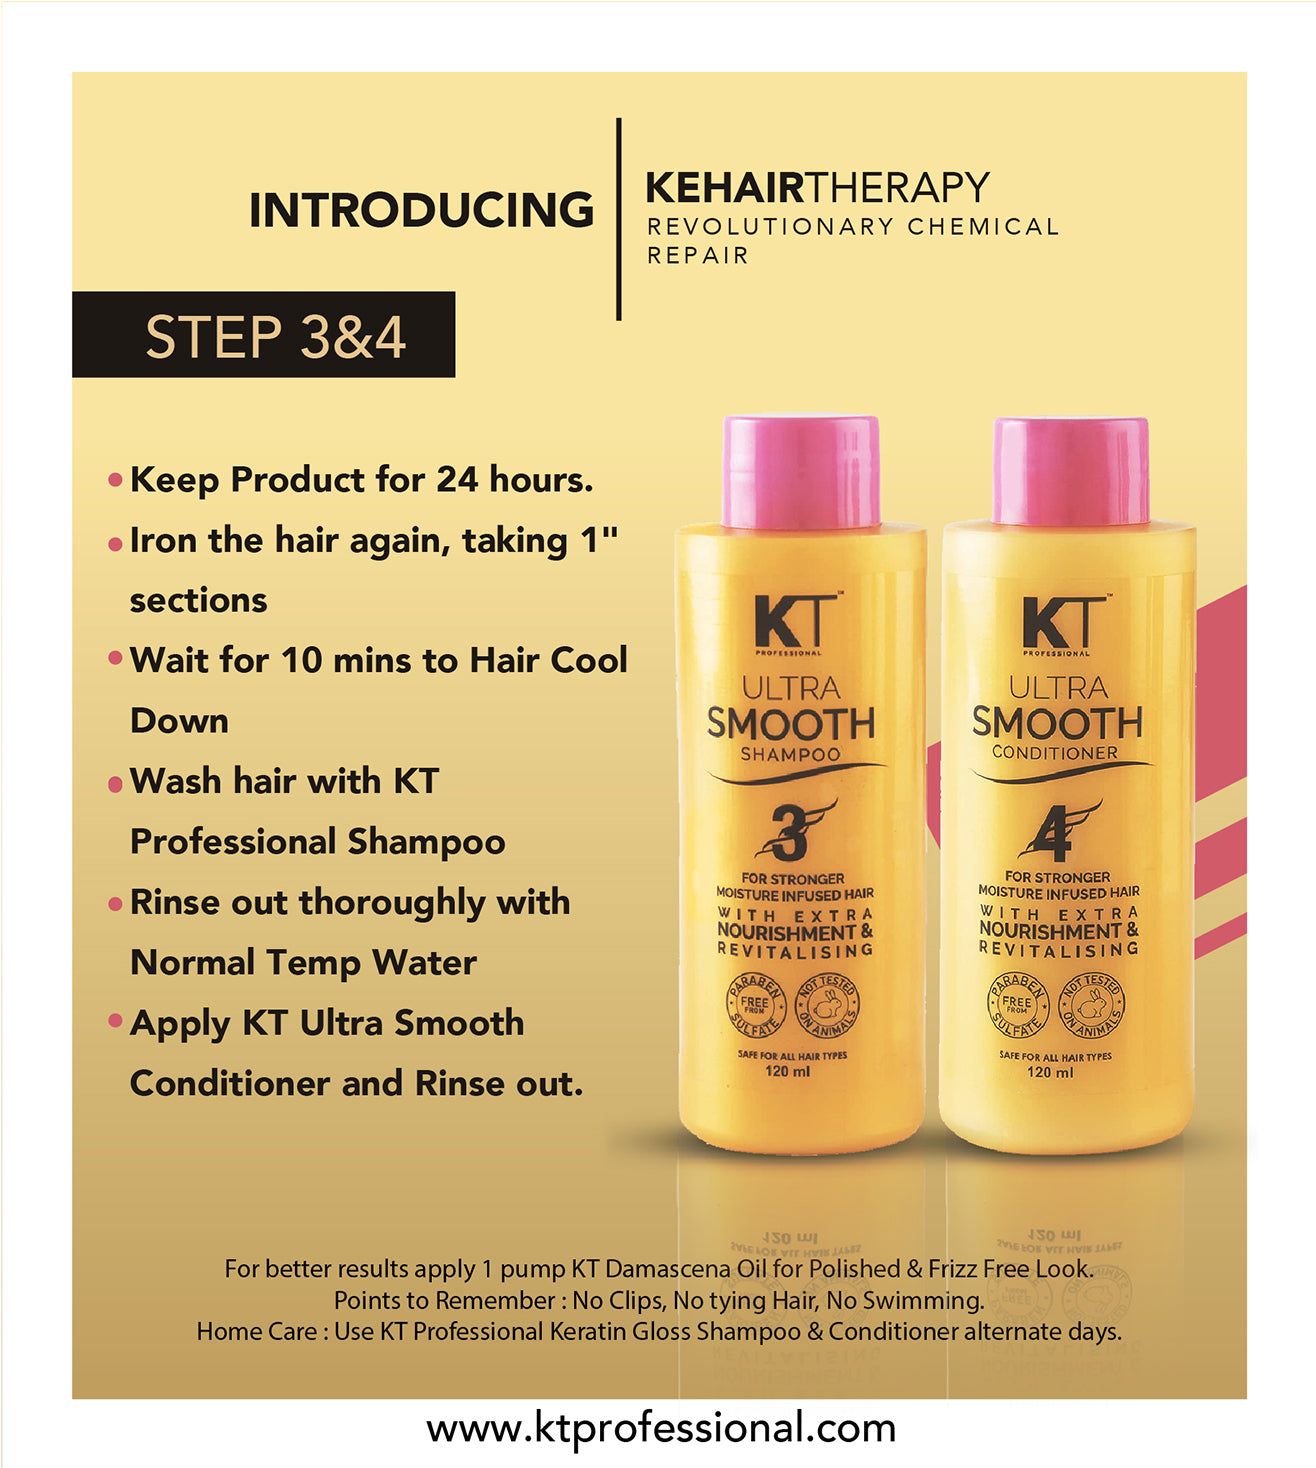 KEHAIRTHERAPY KT Professional COCO KERATIN Starter Kit (480ml)